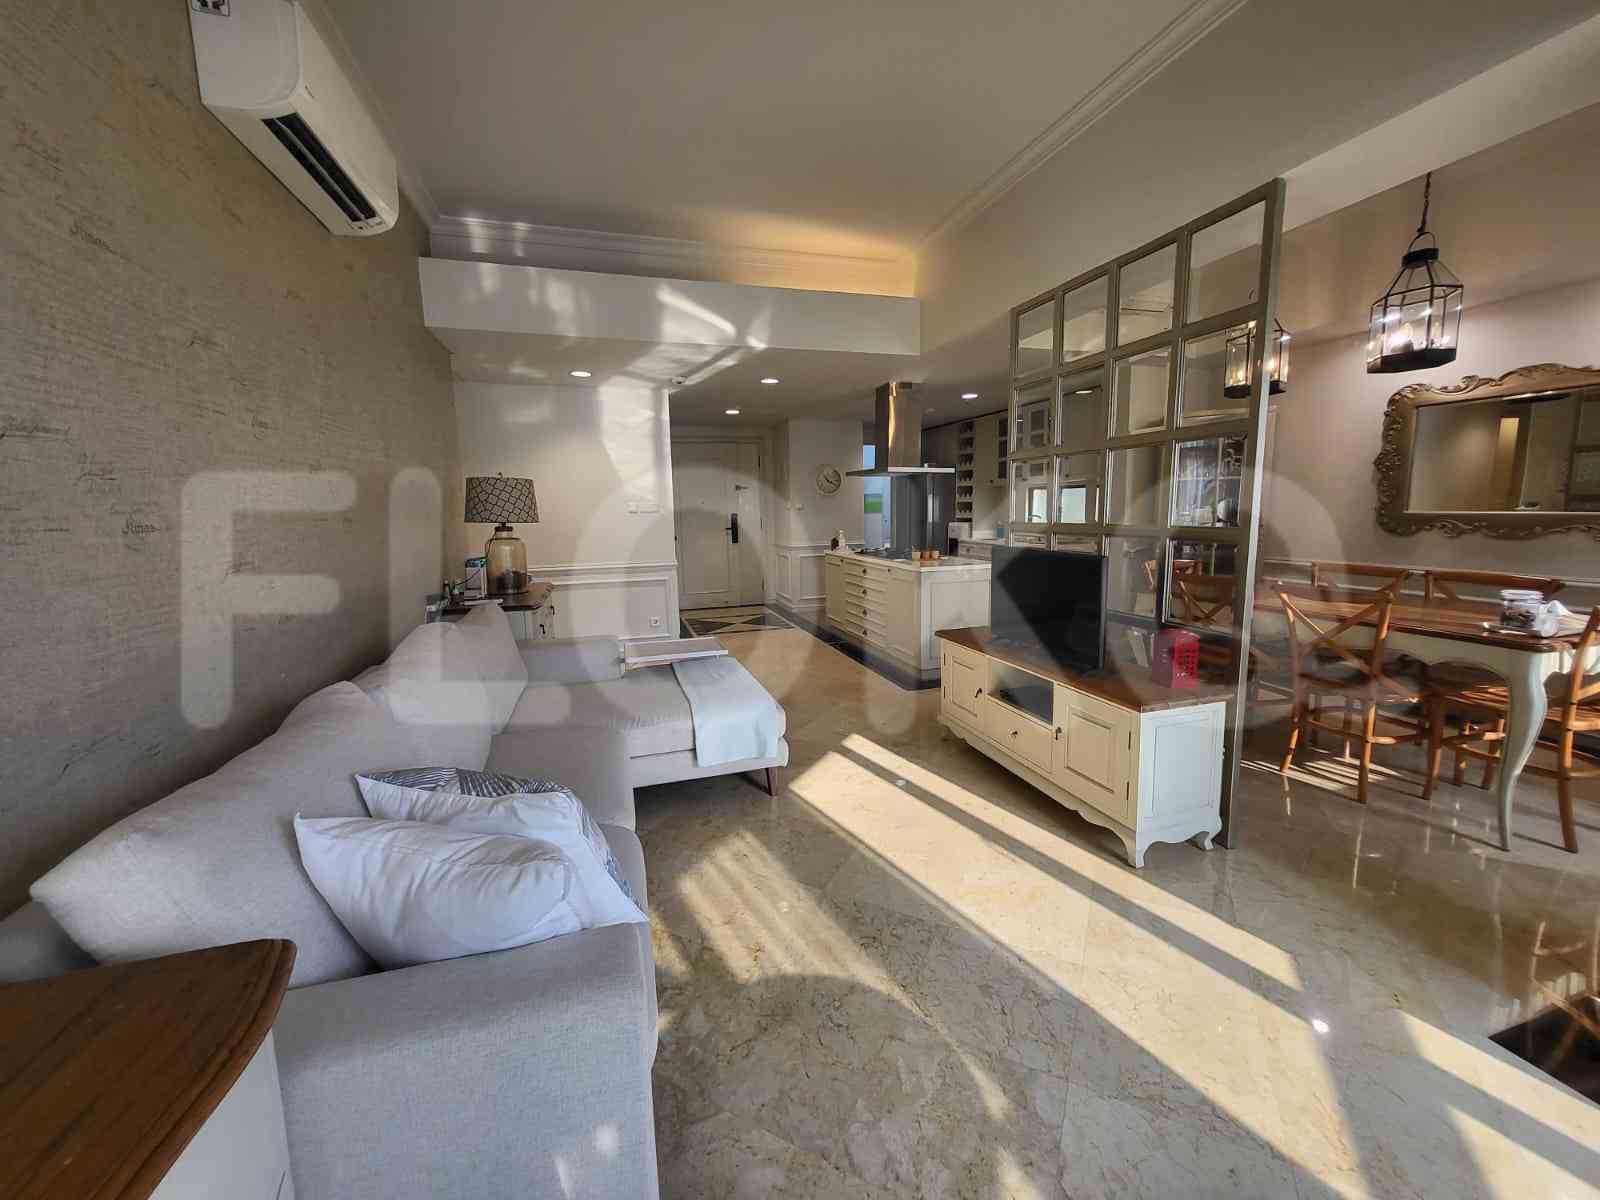 3 Bedroom on 15th Floor for Rent in Apartemen Setiabudi - fku247 2